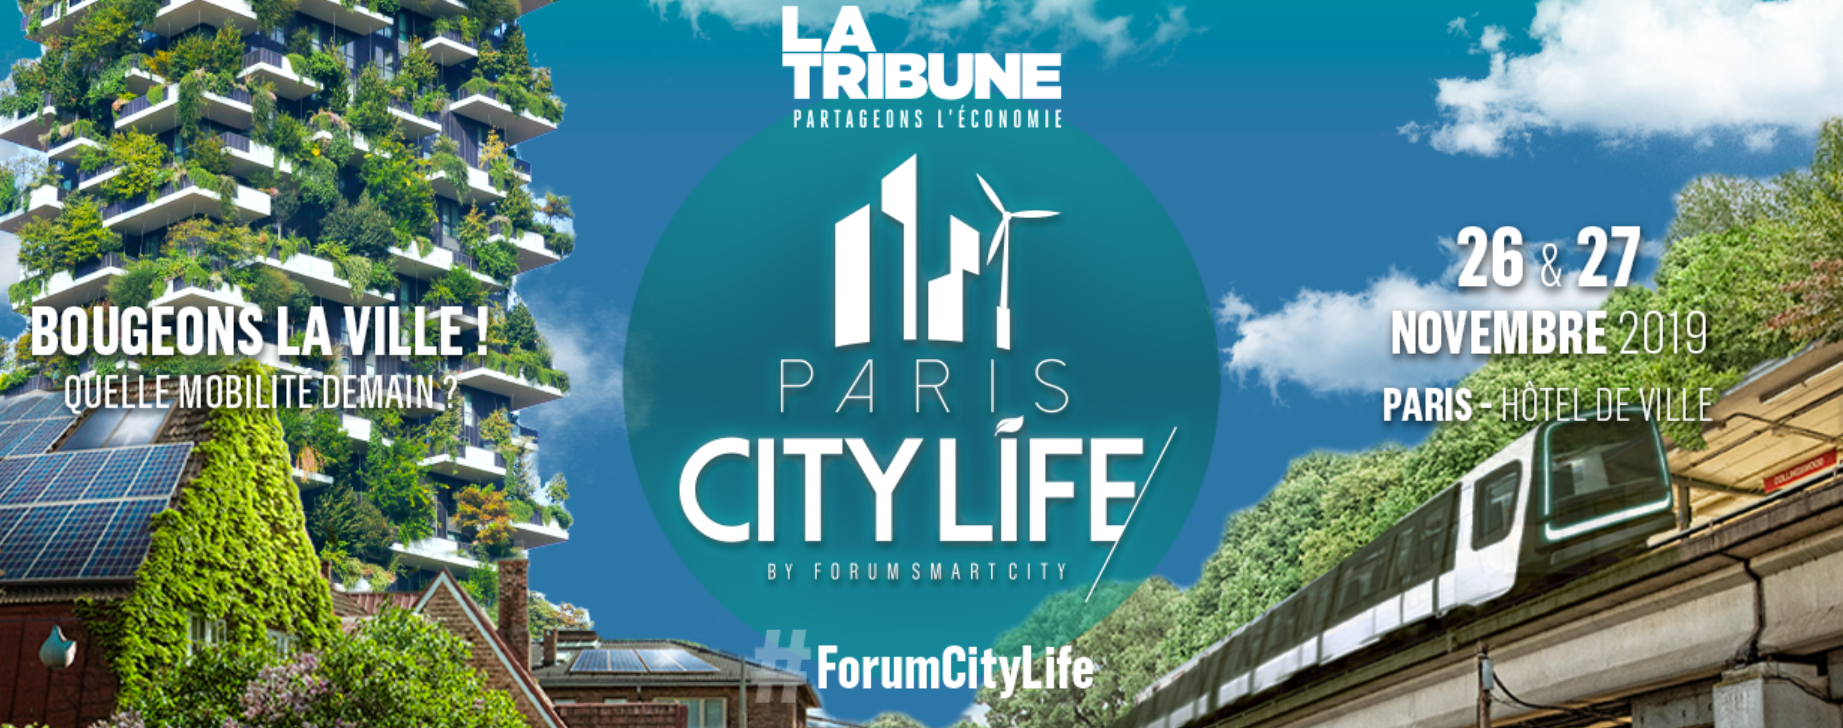 Paris City Life: Bougeons la ville! Quelles mobilités demain?